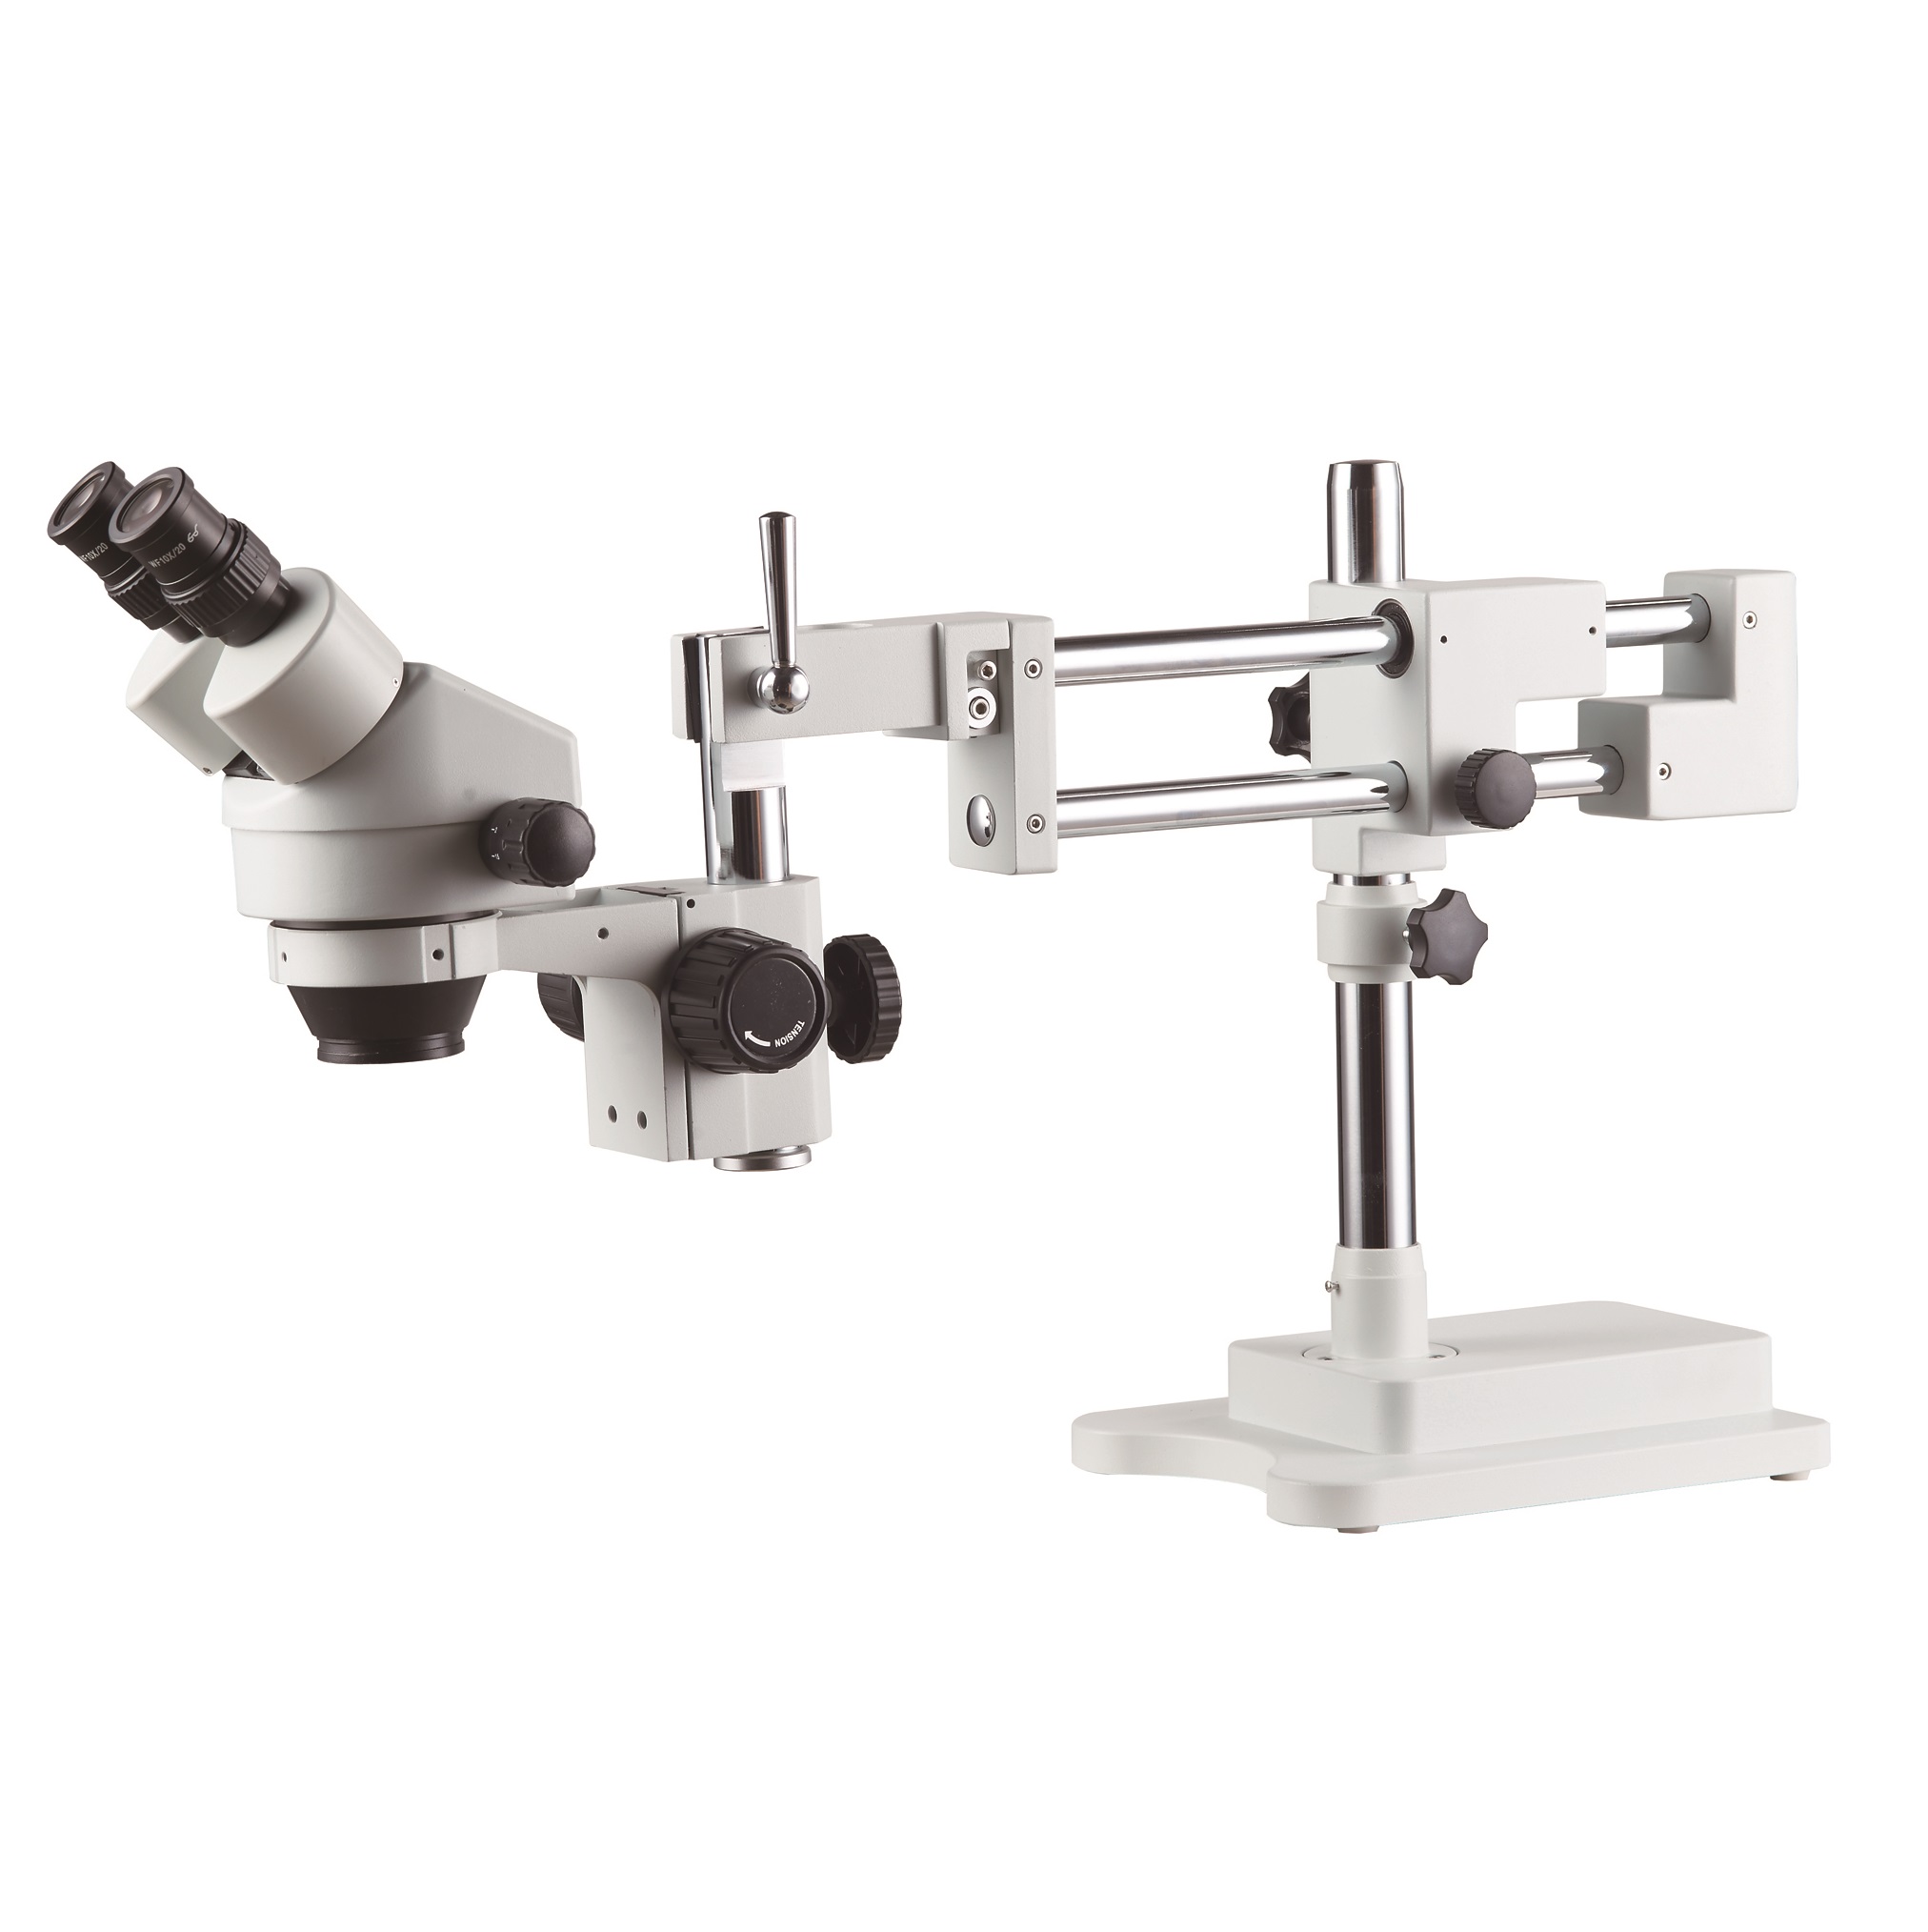 Stereo <br> Microscope <br> SZM7045-STL2